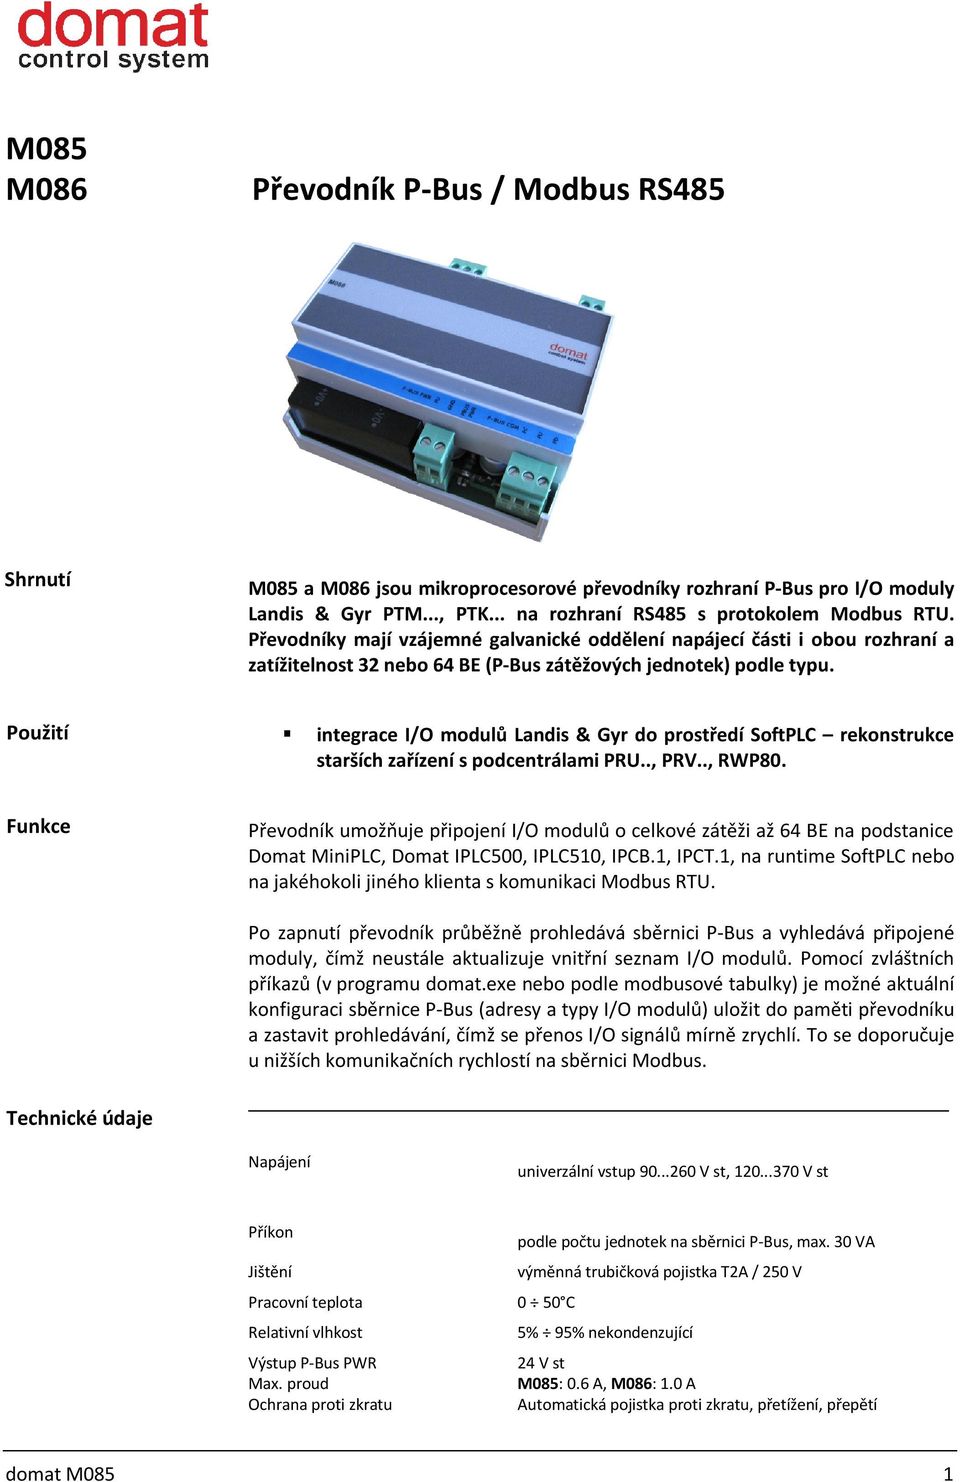 Použití integrace I/O modulů Landis & Gyr do prostředí SoftPLC rekonstrukce starších zařízení s podcentrálami PRU.., PRV.., RWP80.